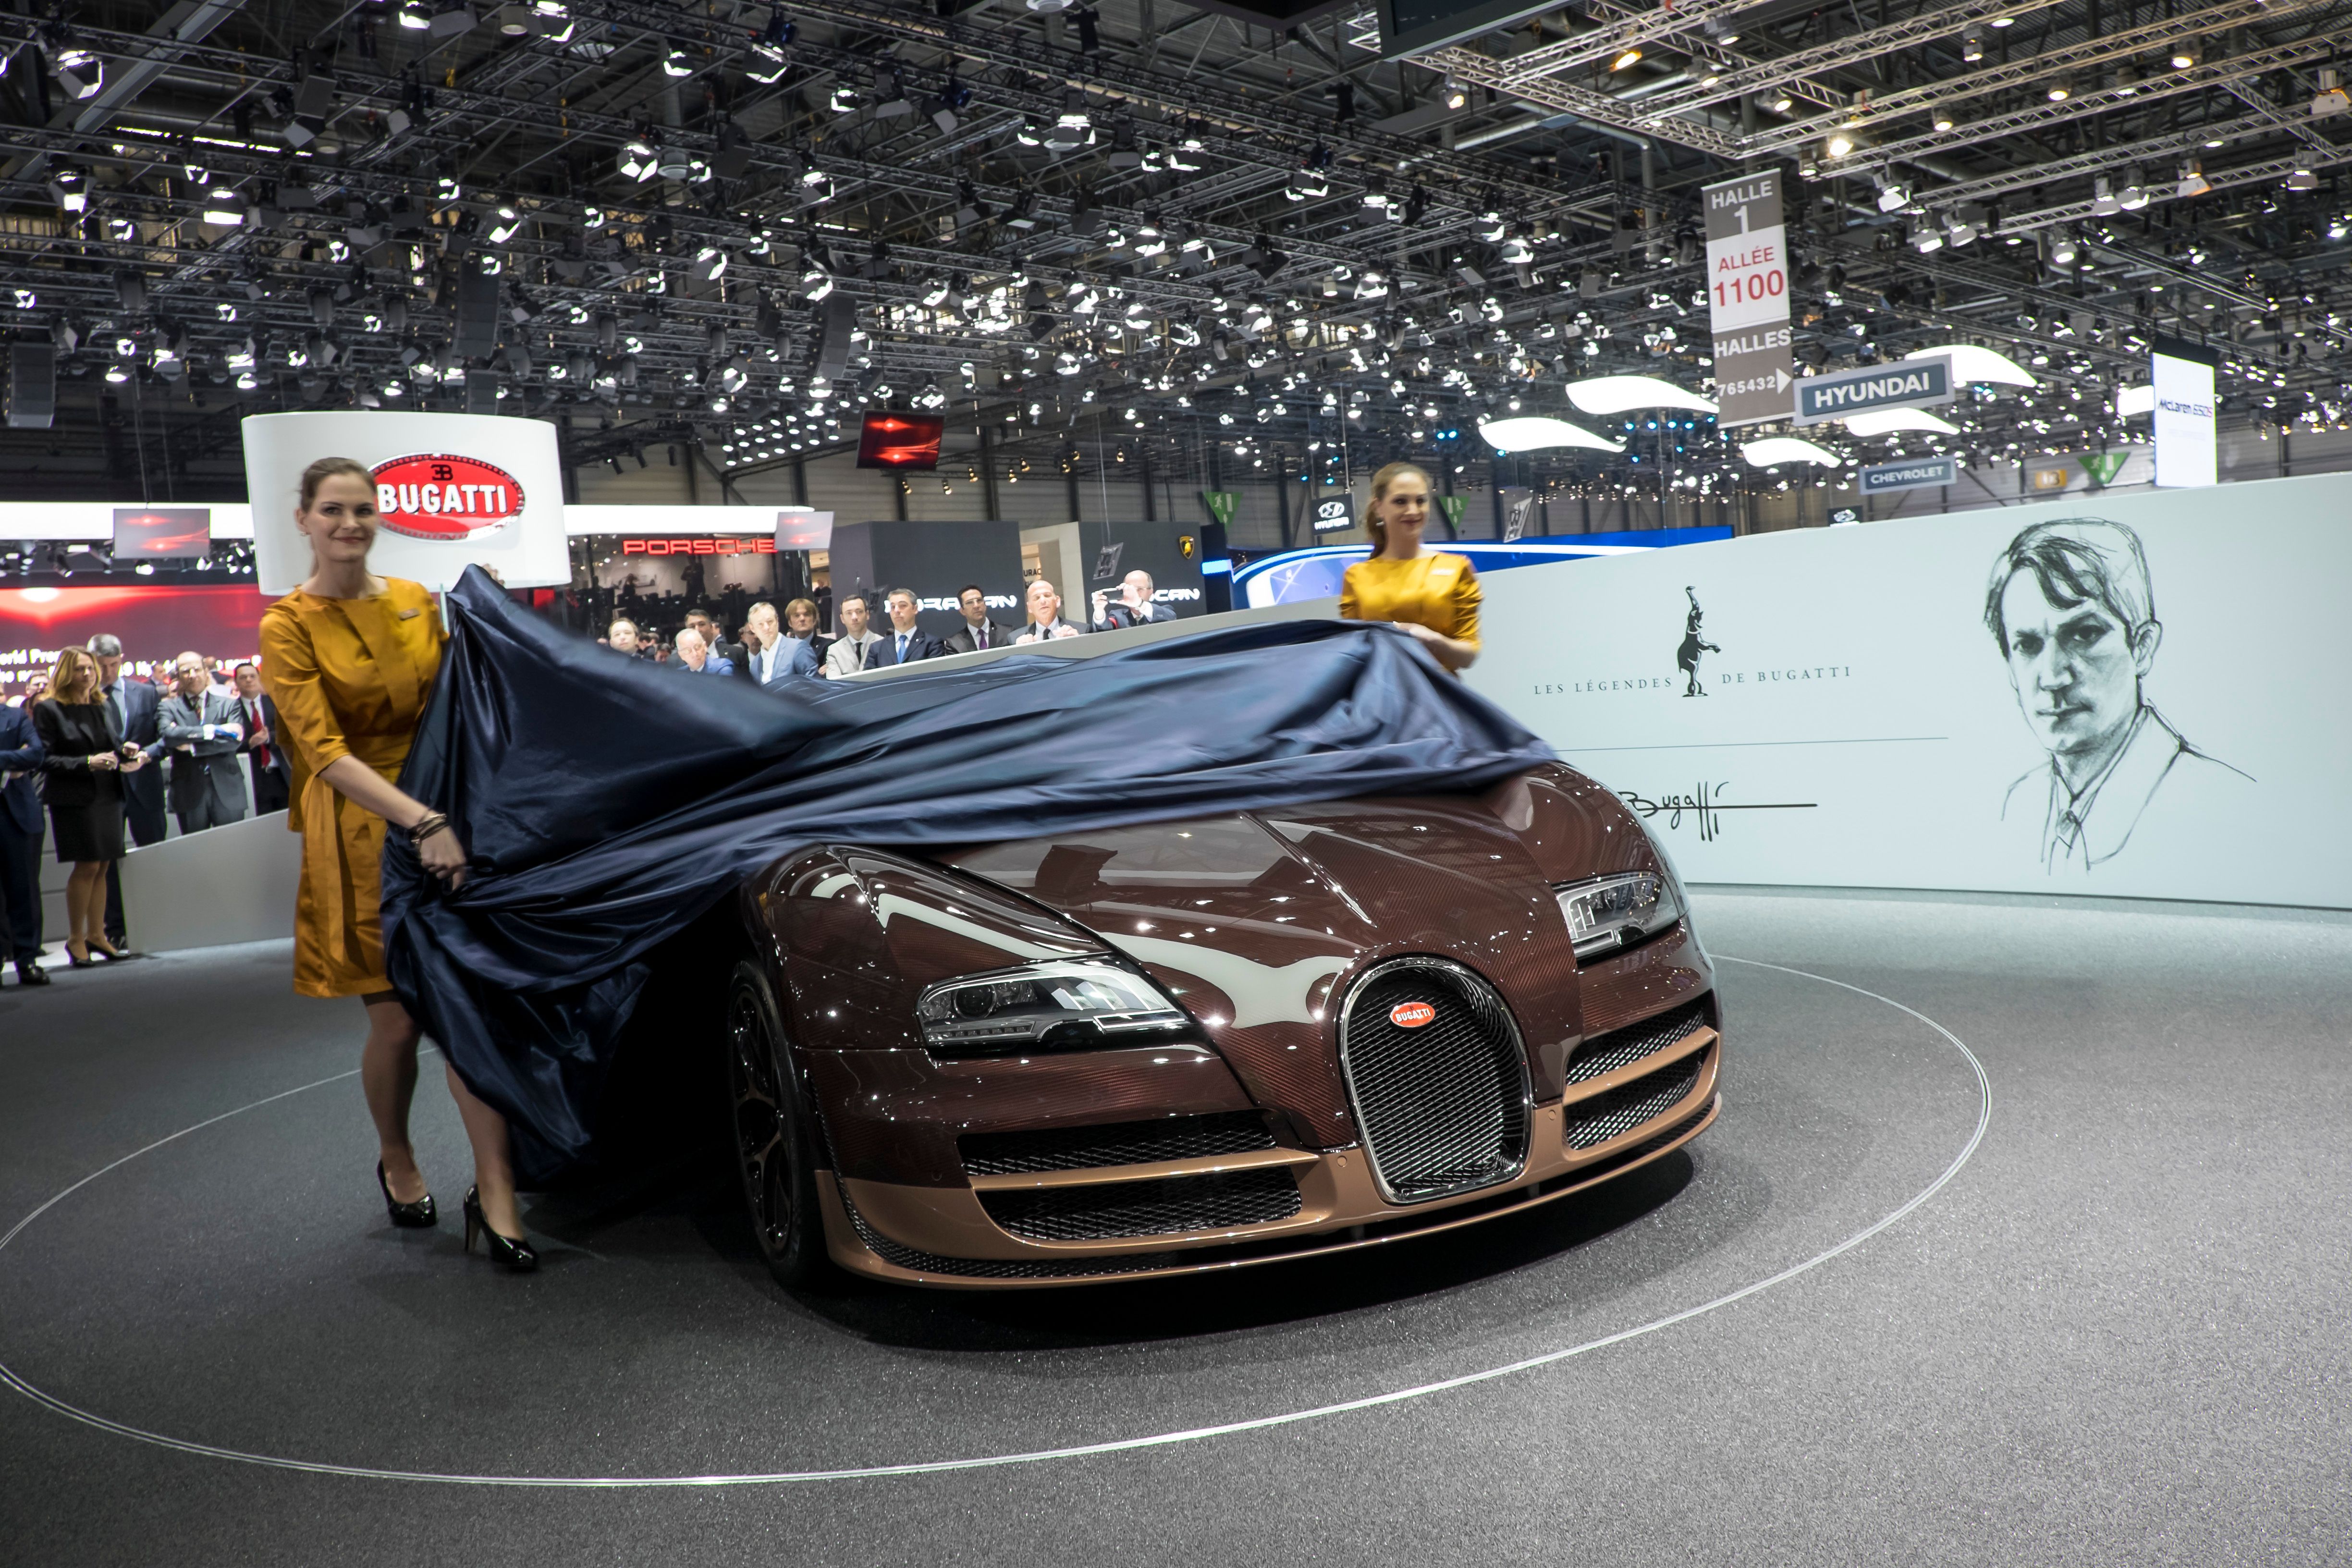 2014 Bugatti Veyron 16.4 Grand Sport Vitesse Rembrandt Bugatti